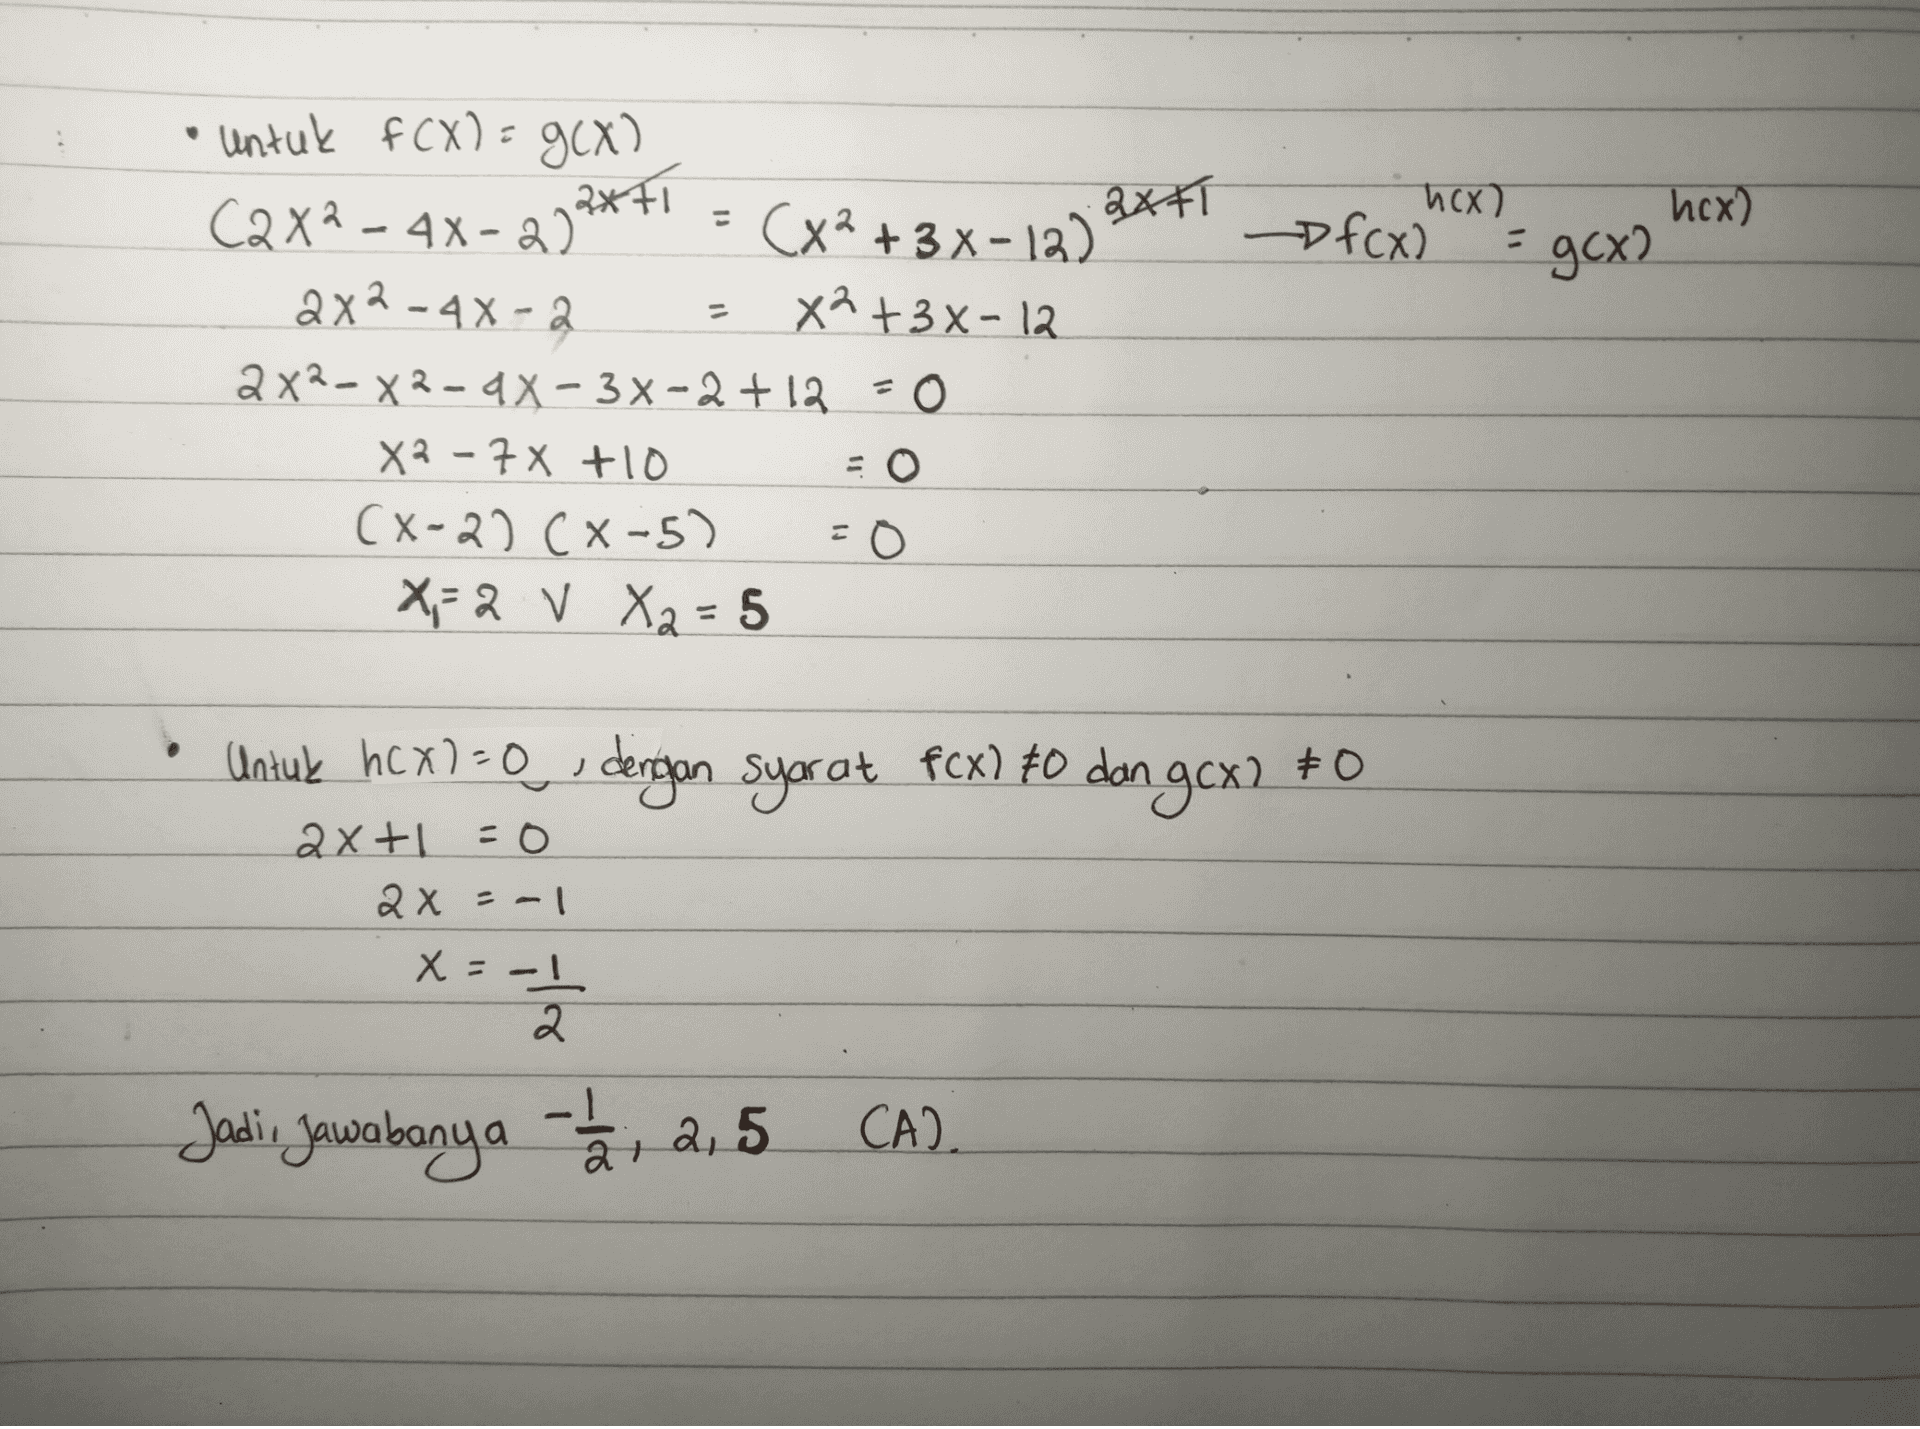 axti - hux) hox) f(x) - gcx? - • untuk f (X) = 9CX) C2x2 - 4x - 2)2**- (x2+3x-12) 2 x² - 2x2-4X-2 X² + 3x-12 2x2-X2-4X-3X-2 + 12 = 0 X² - 7x +10 = 0 (x-2). CX-5) = 0 X-2 V X2=5 - Untuk hcx)=0, dengan syarat fcx) to dan gCx2 #O 2x+1=0 2x = -1 x=-1 X 2 Jadi, Jawabanya - 2, 2,5 CA) 2 